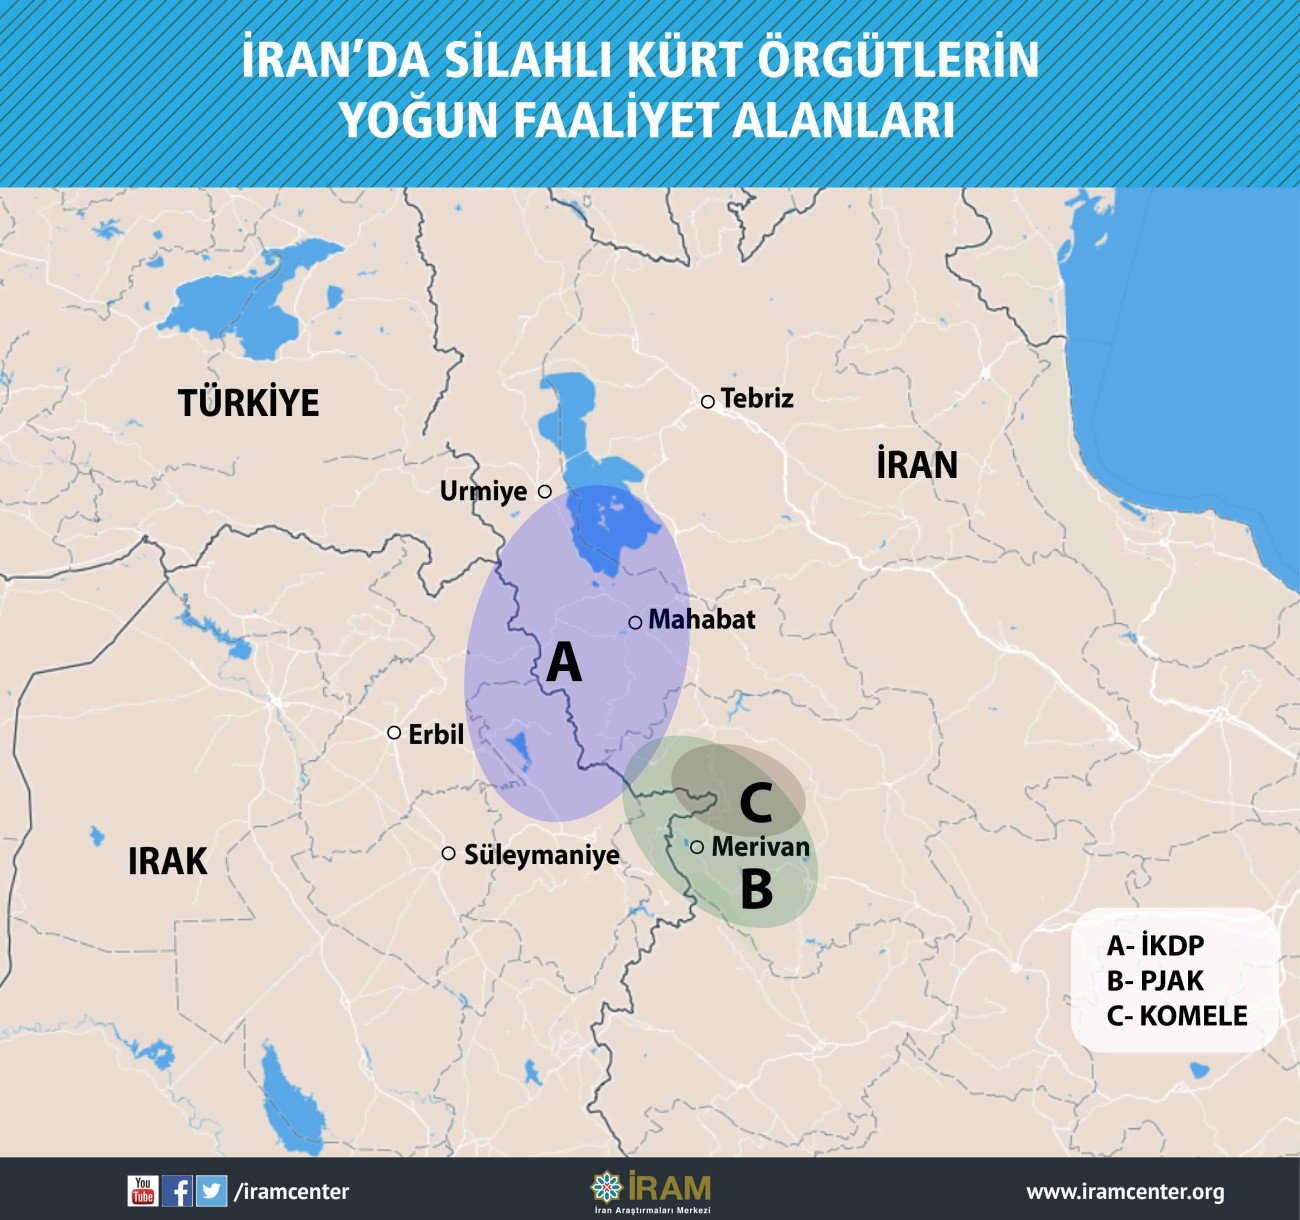 İran'da Silahlı Kürt Örgütlerin Yoğun Faaliyet Alanları